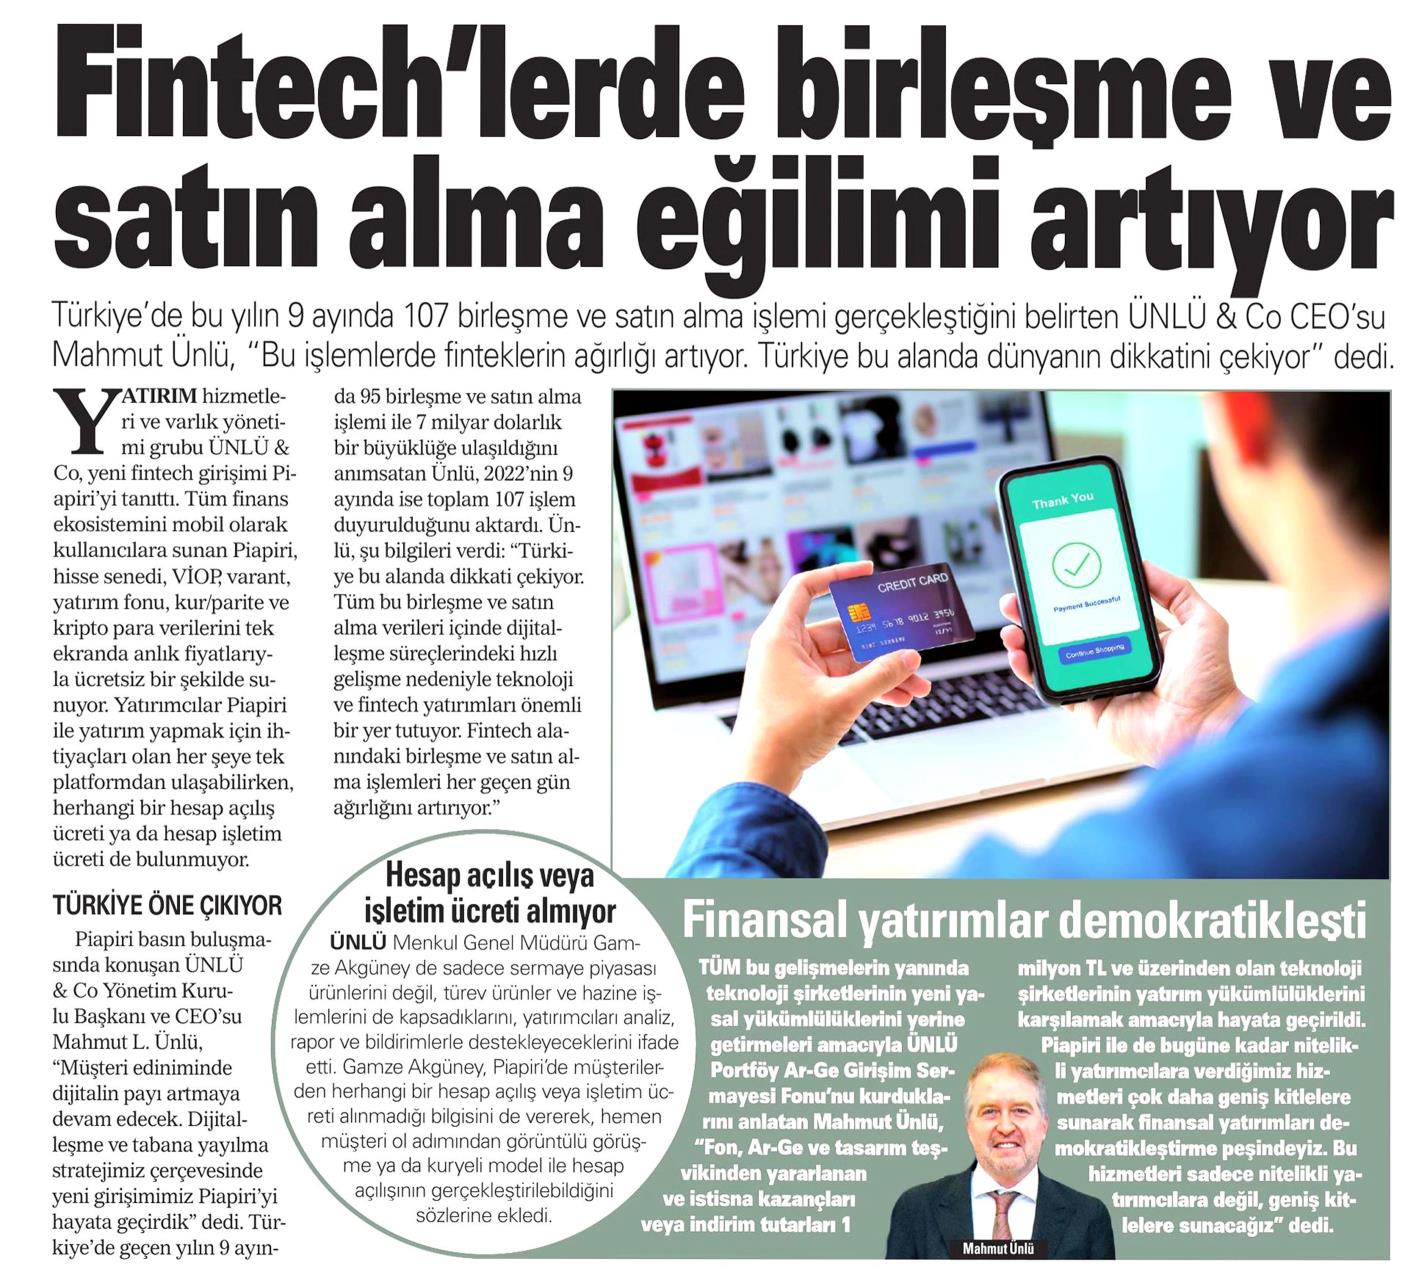 "Fintech’lerde birleşme ve satın alma eğilimi artıyor", Akşam Gazetesi